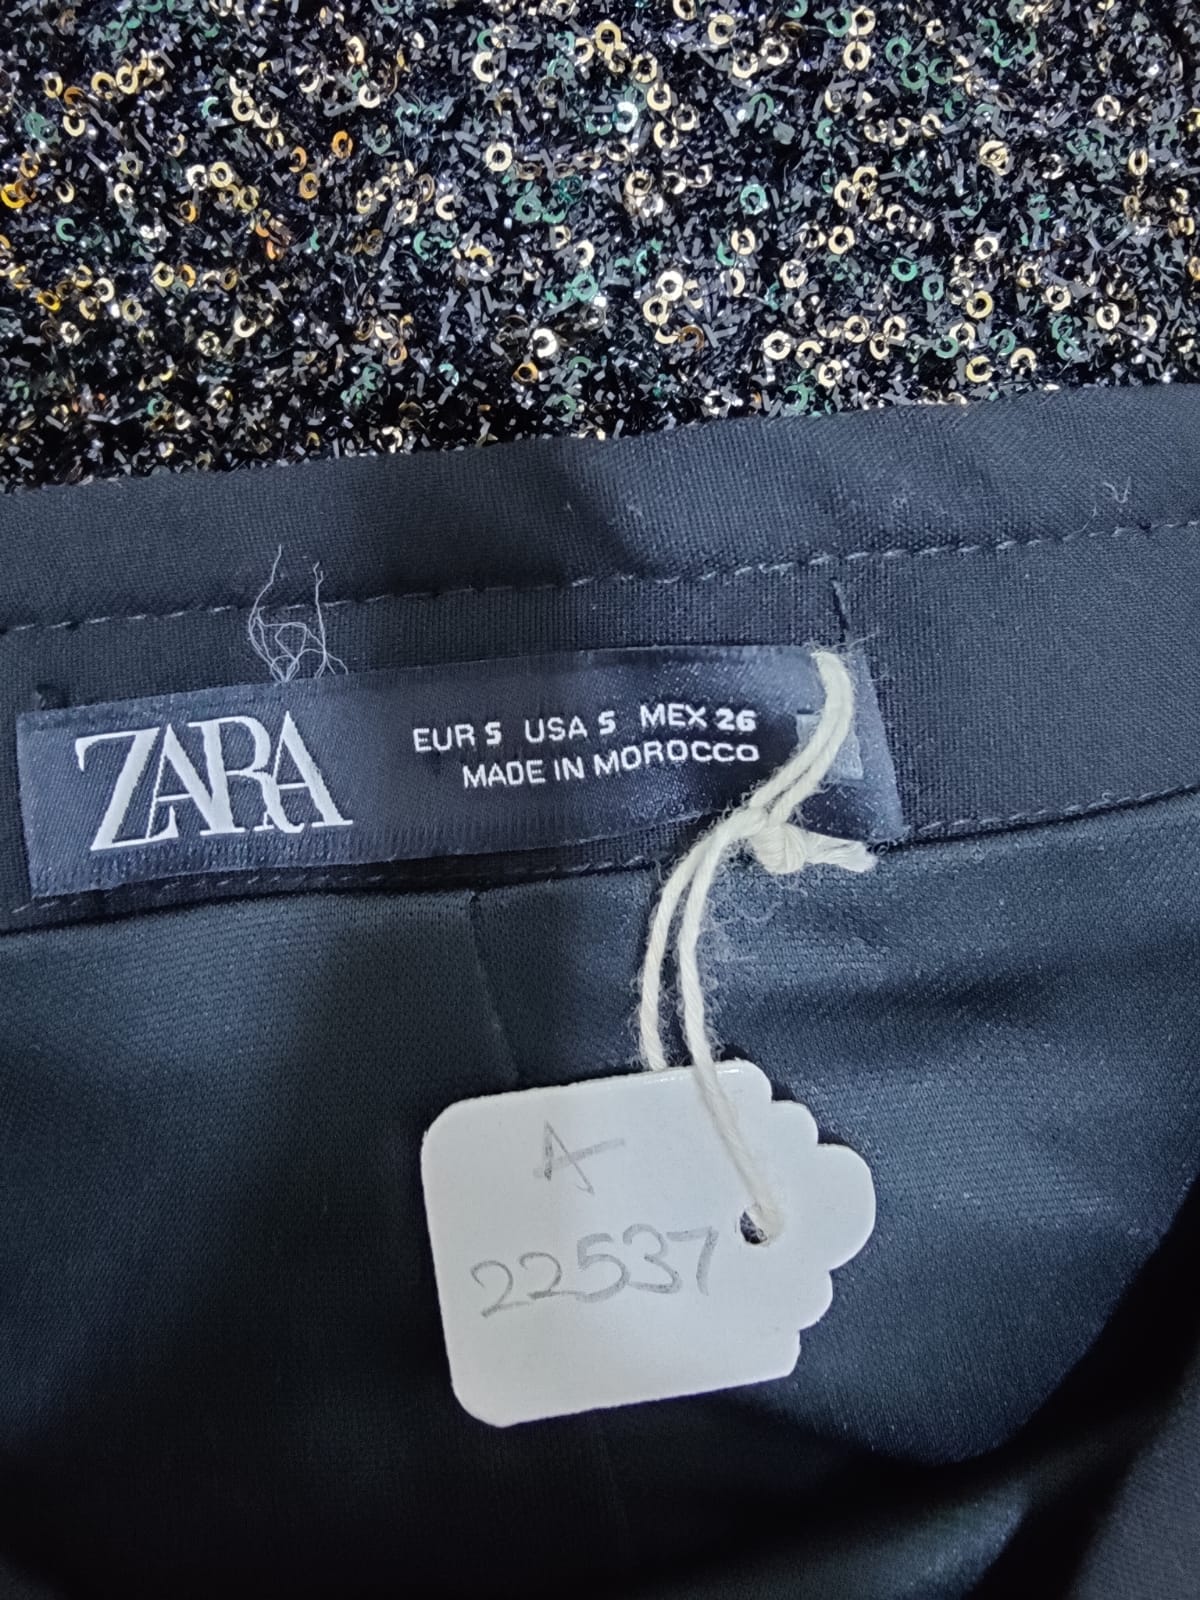 ZARA Black Glittered Shorts | Relove